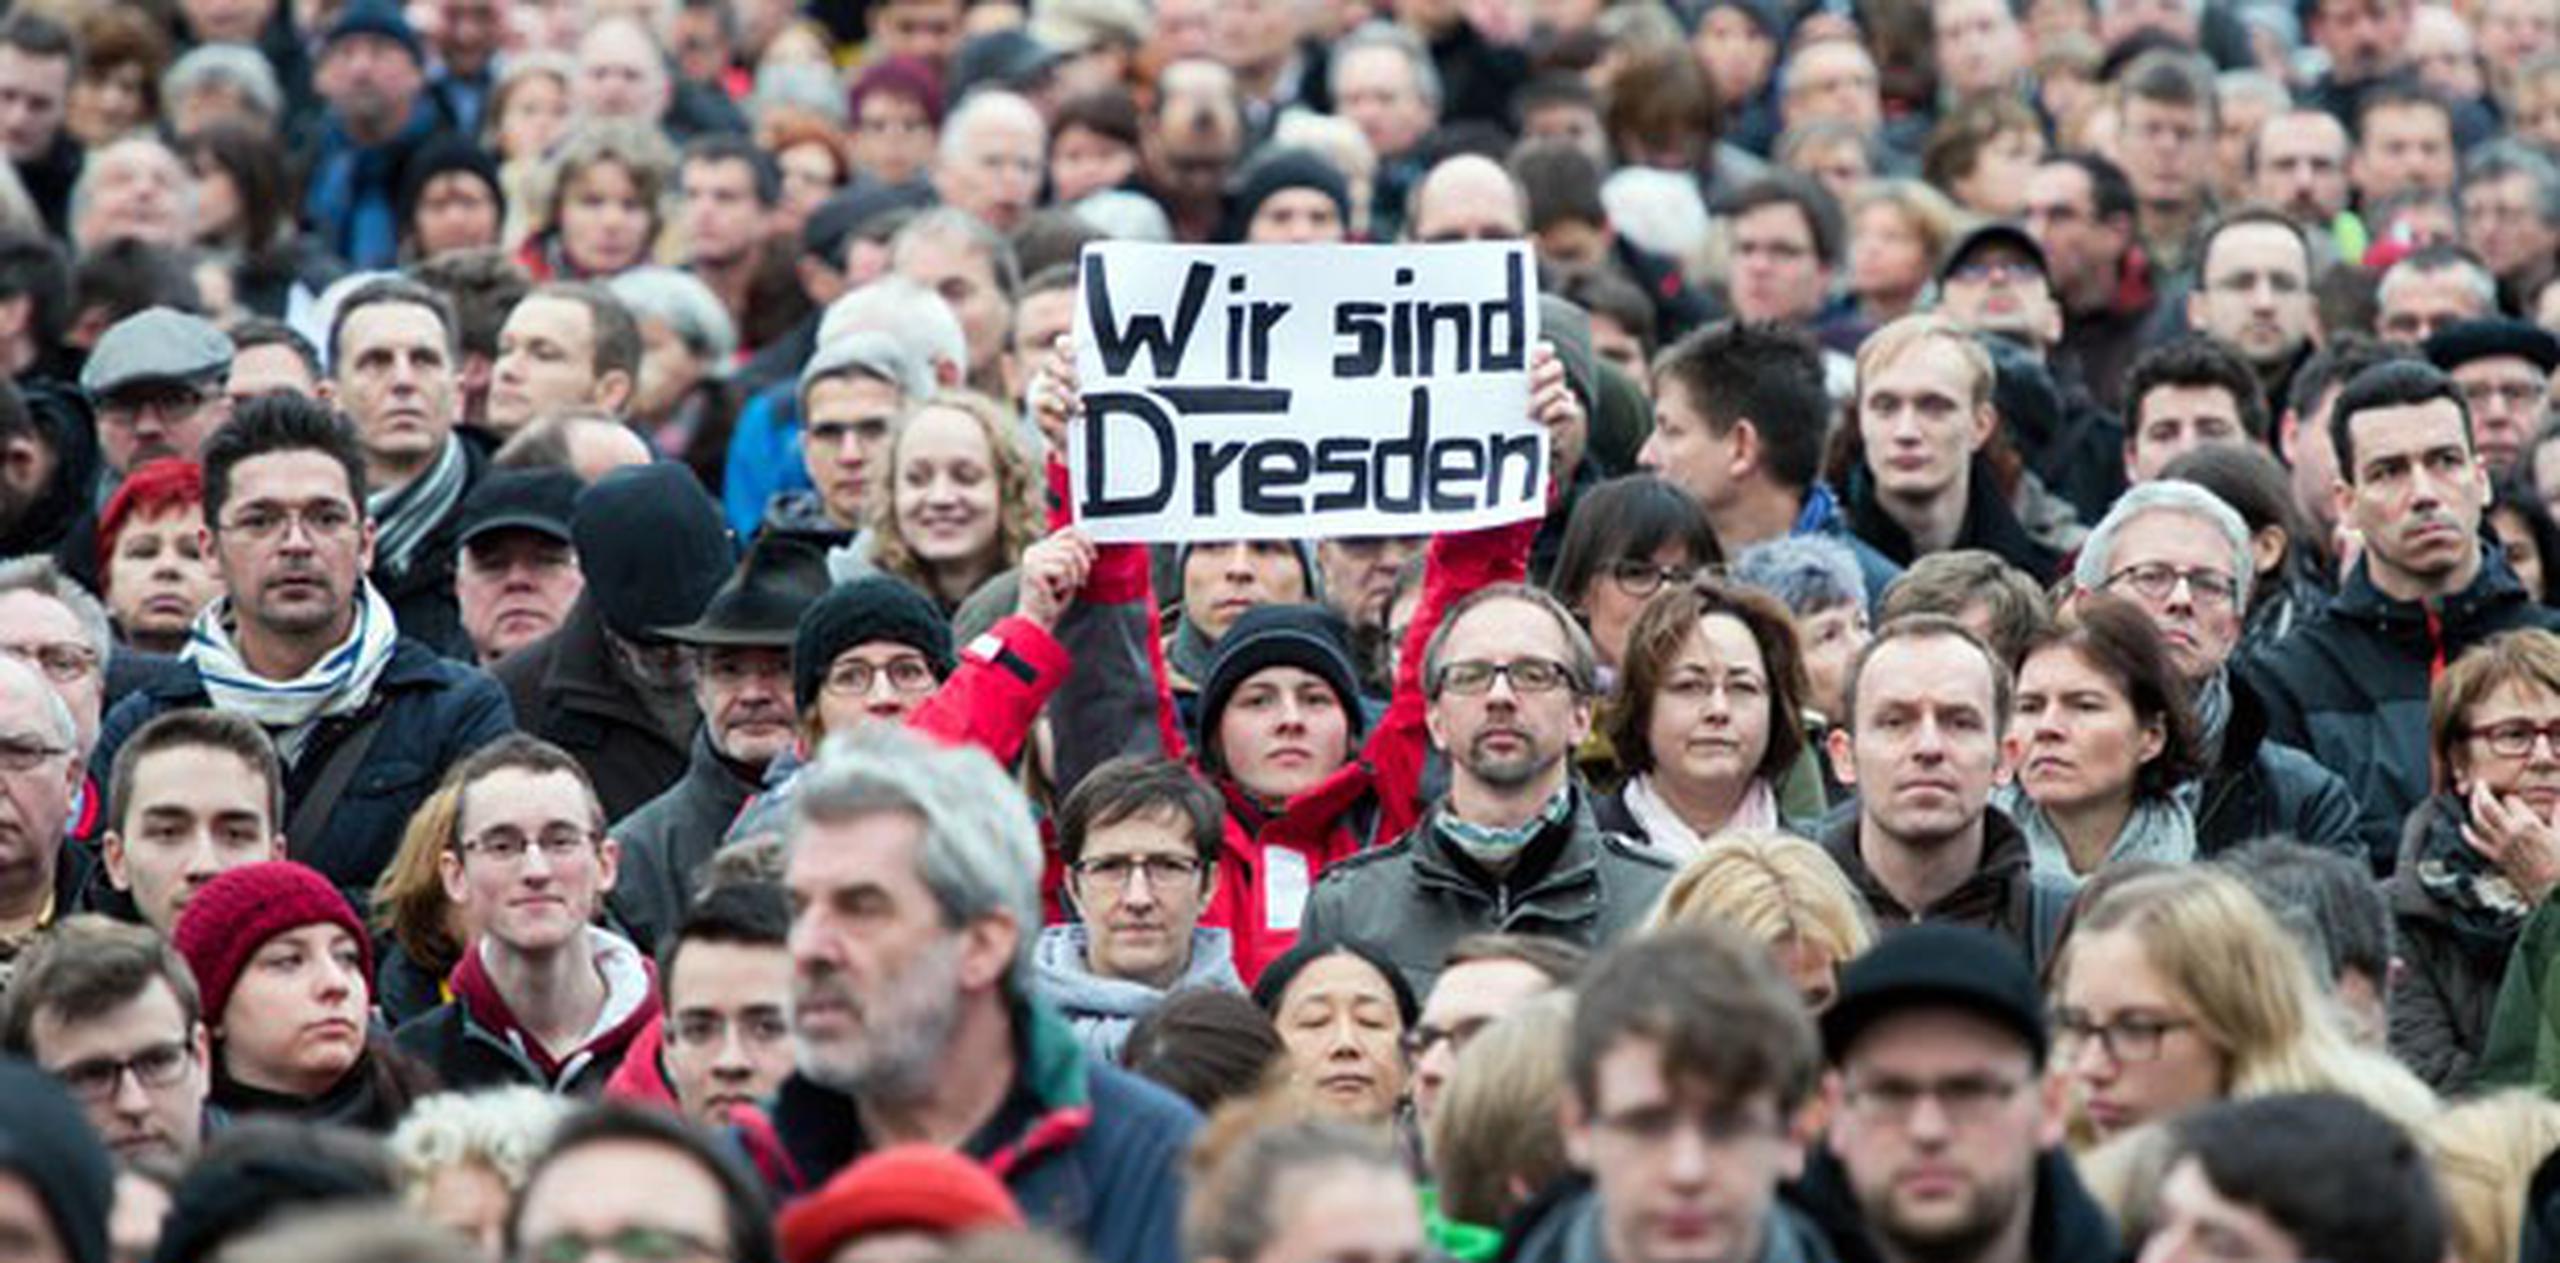 La canciller Angela Merkel ya había pedido a los alemanes no participar en las concentraciones convocadas por Pegida. (AP)